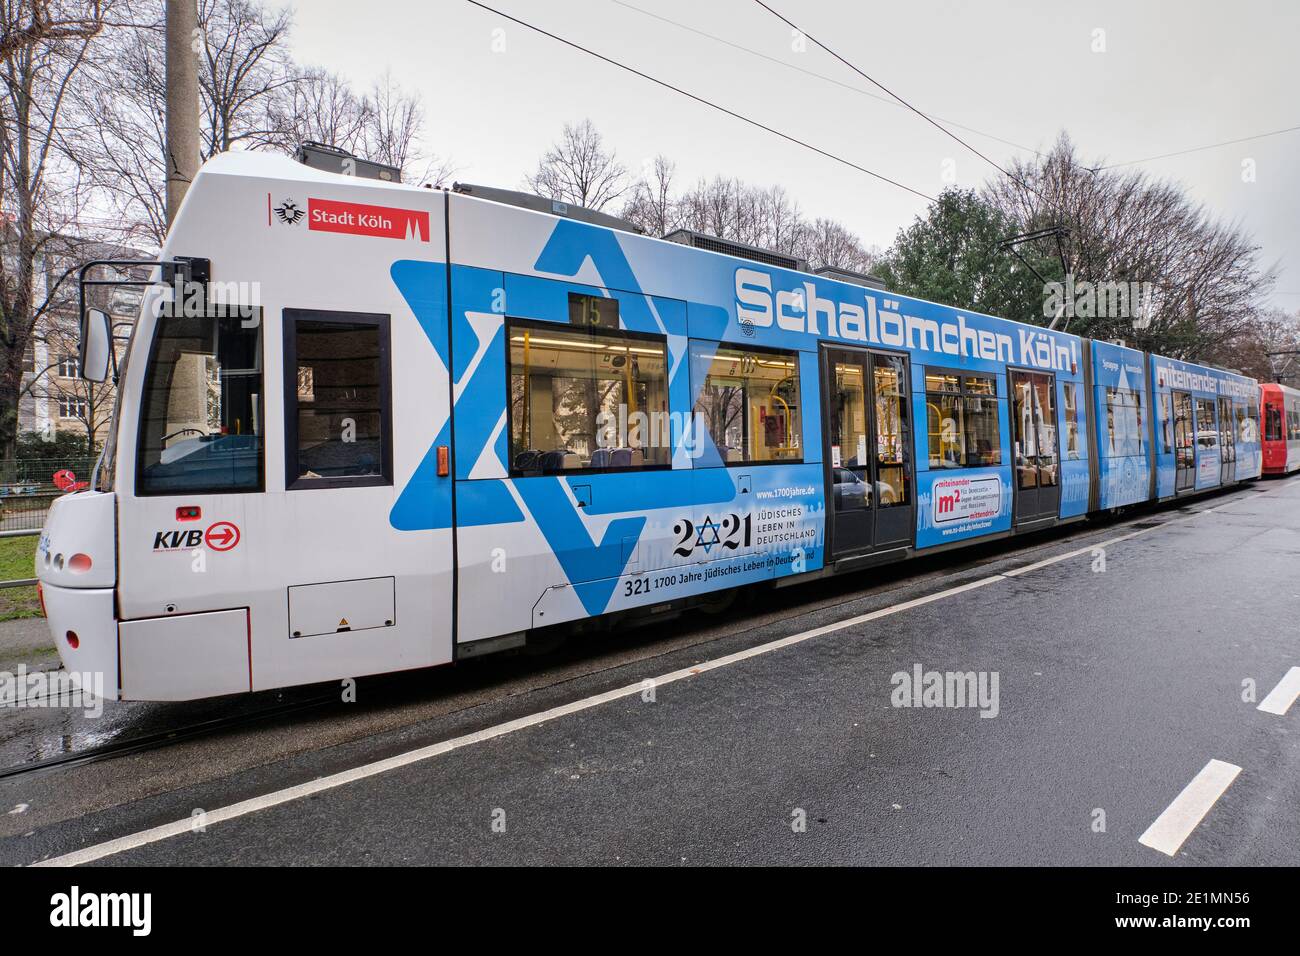 Mit einem speziell gestalteten Zug setzen die Stadt Köln, die Synagogengemeinde und der öffentliche Nahverkehr ein Zeichen für Demokratie Stockfoto